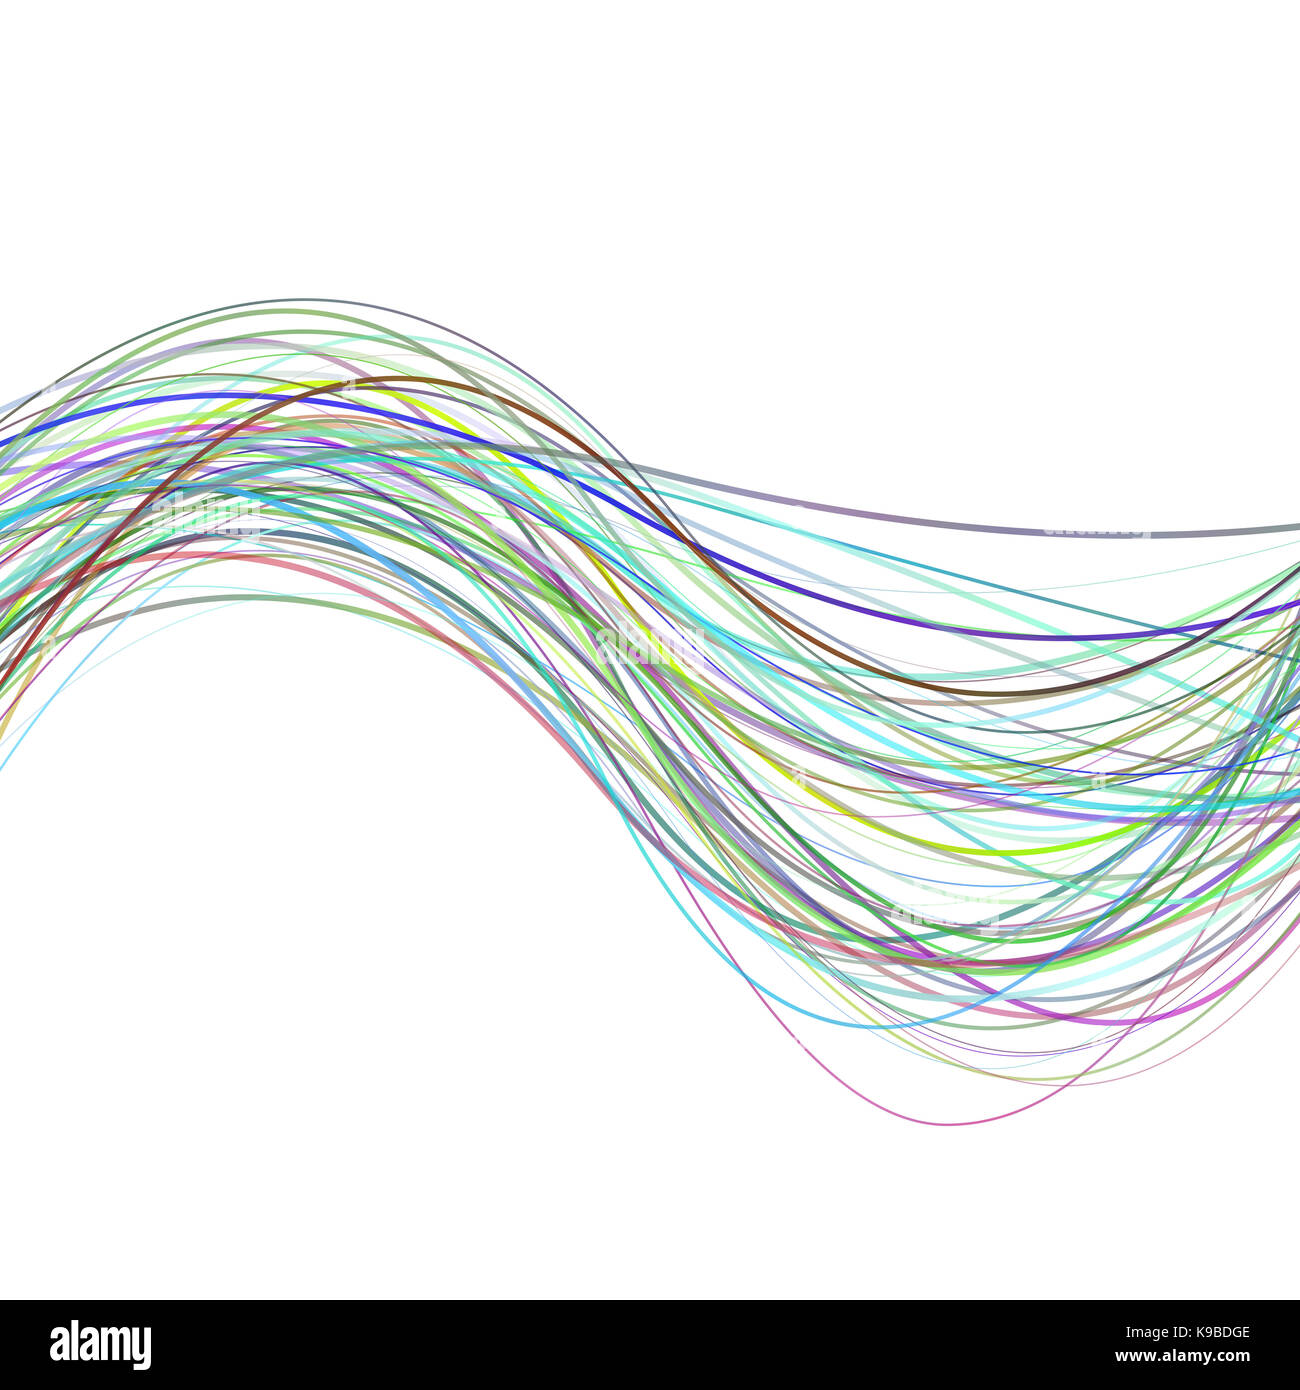 Résumé dynamique vague fond de rayure de couleur de l'illustration des lignes courbes Banque D'Images